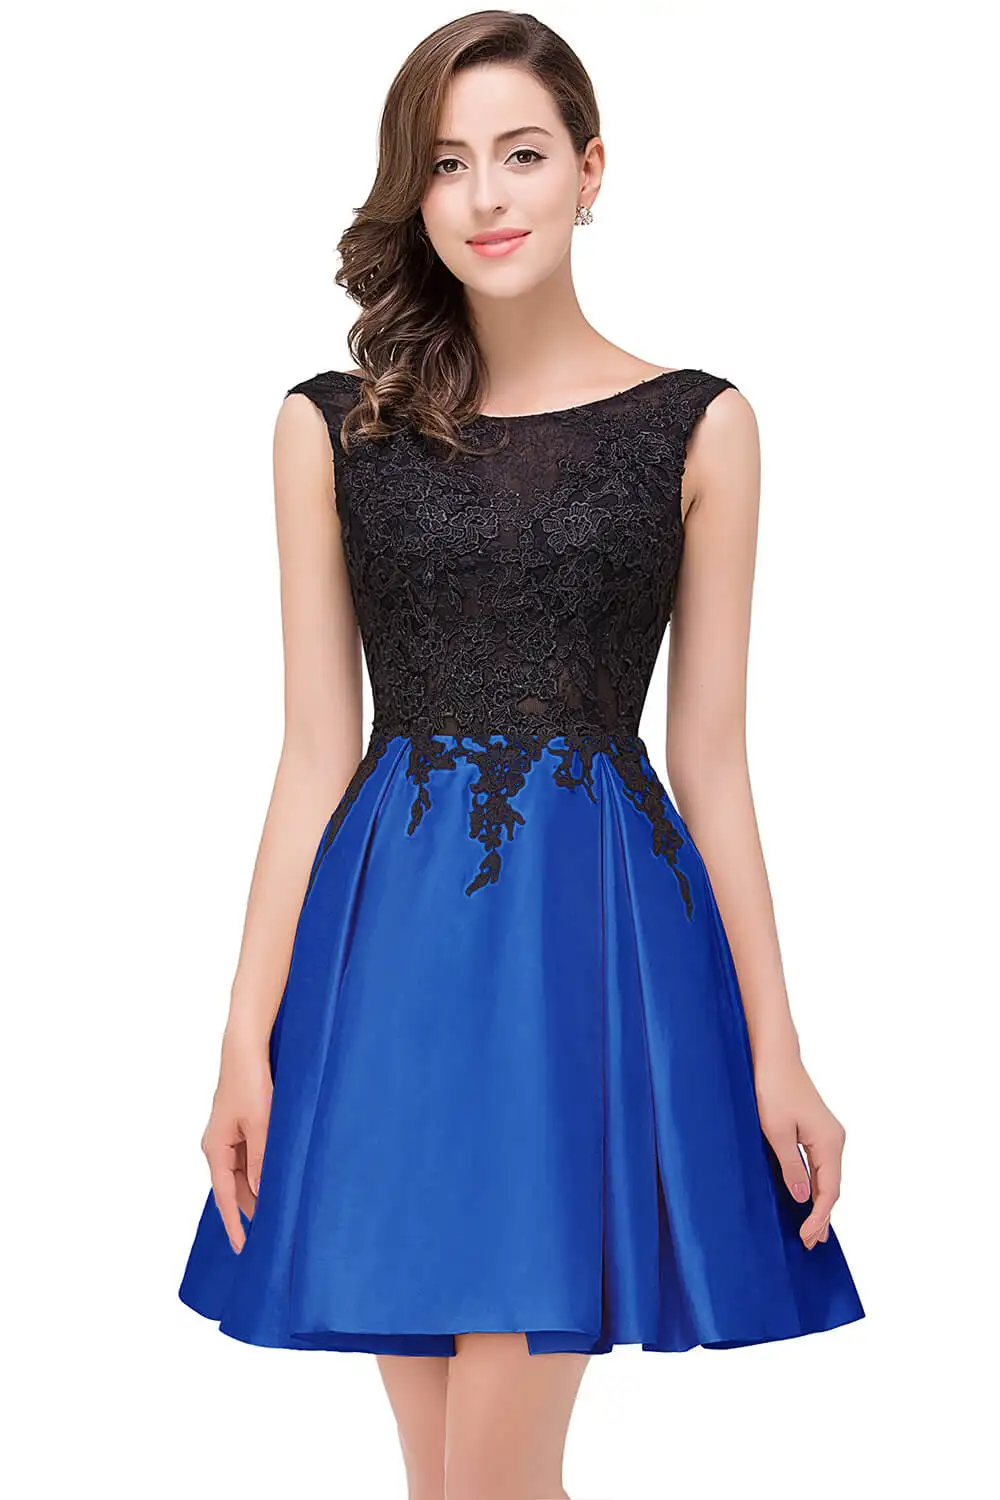 Элегантное кружевное короткое вечернее платье контрастного цвета, Сексуальные вечерние платья без рукавов - Цвет: Royal Blue